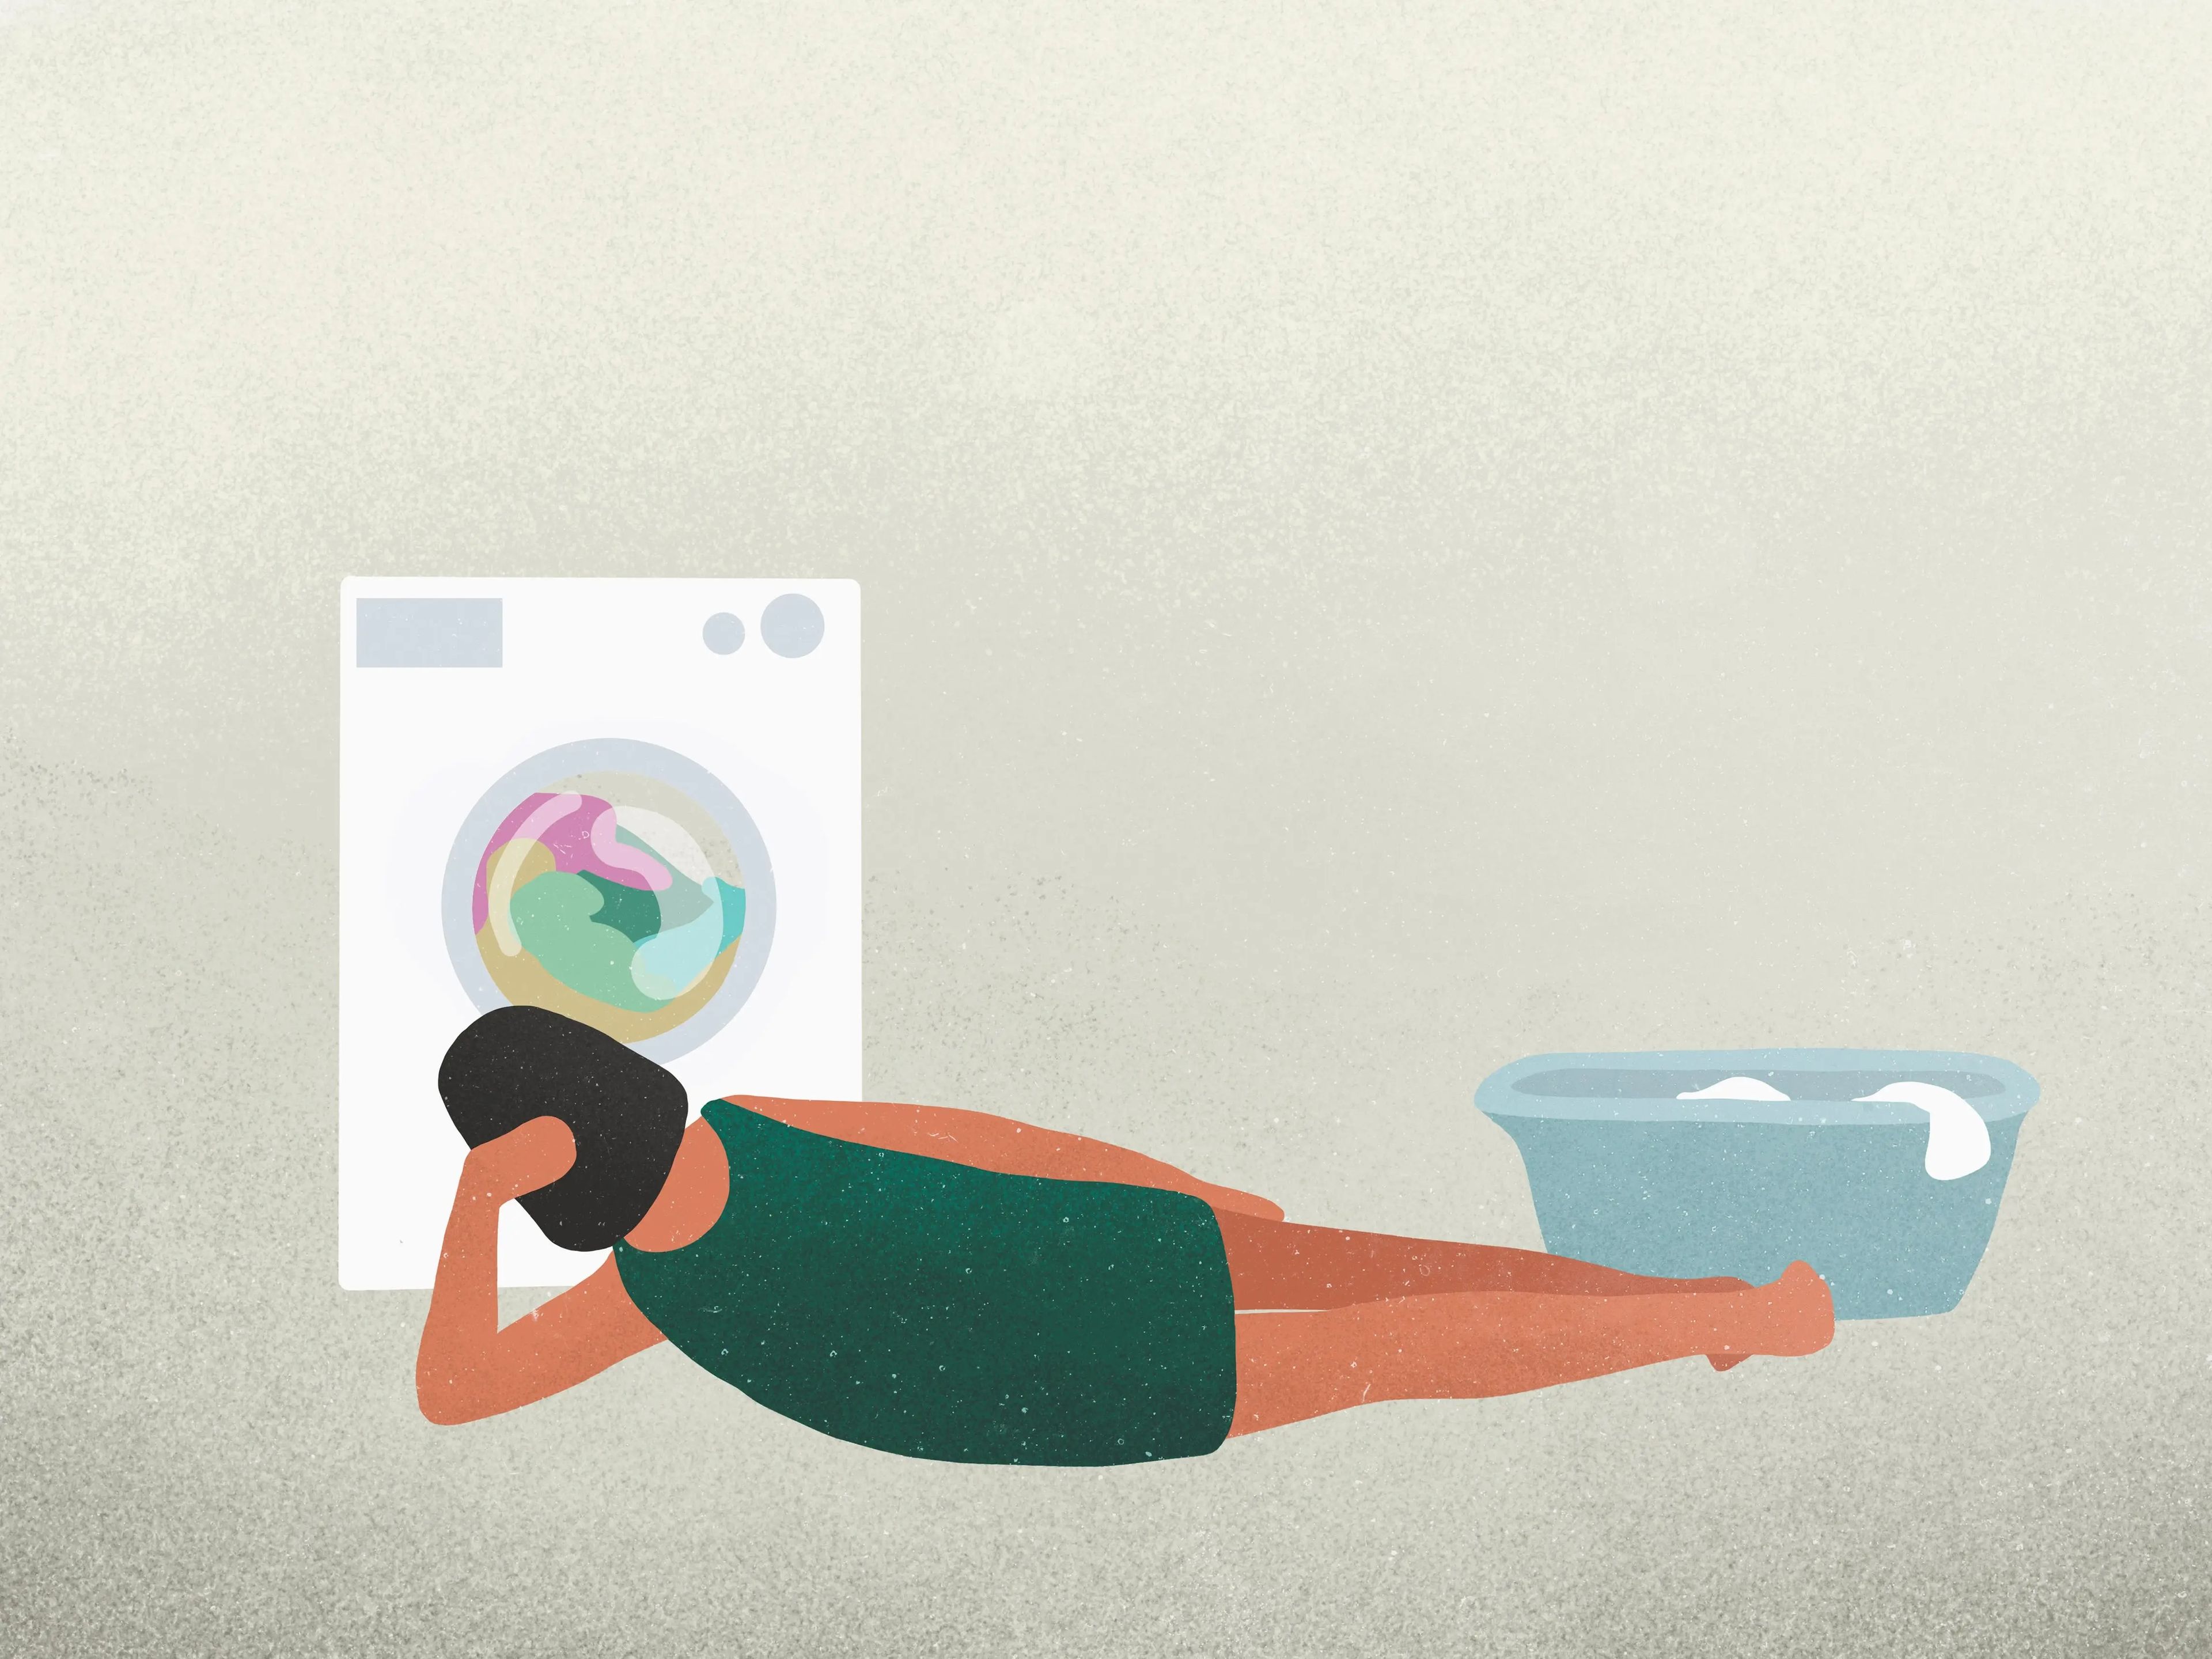 Utilizar programas más suaves en la lavadora puede alargar la vida de la ropa..